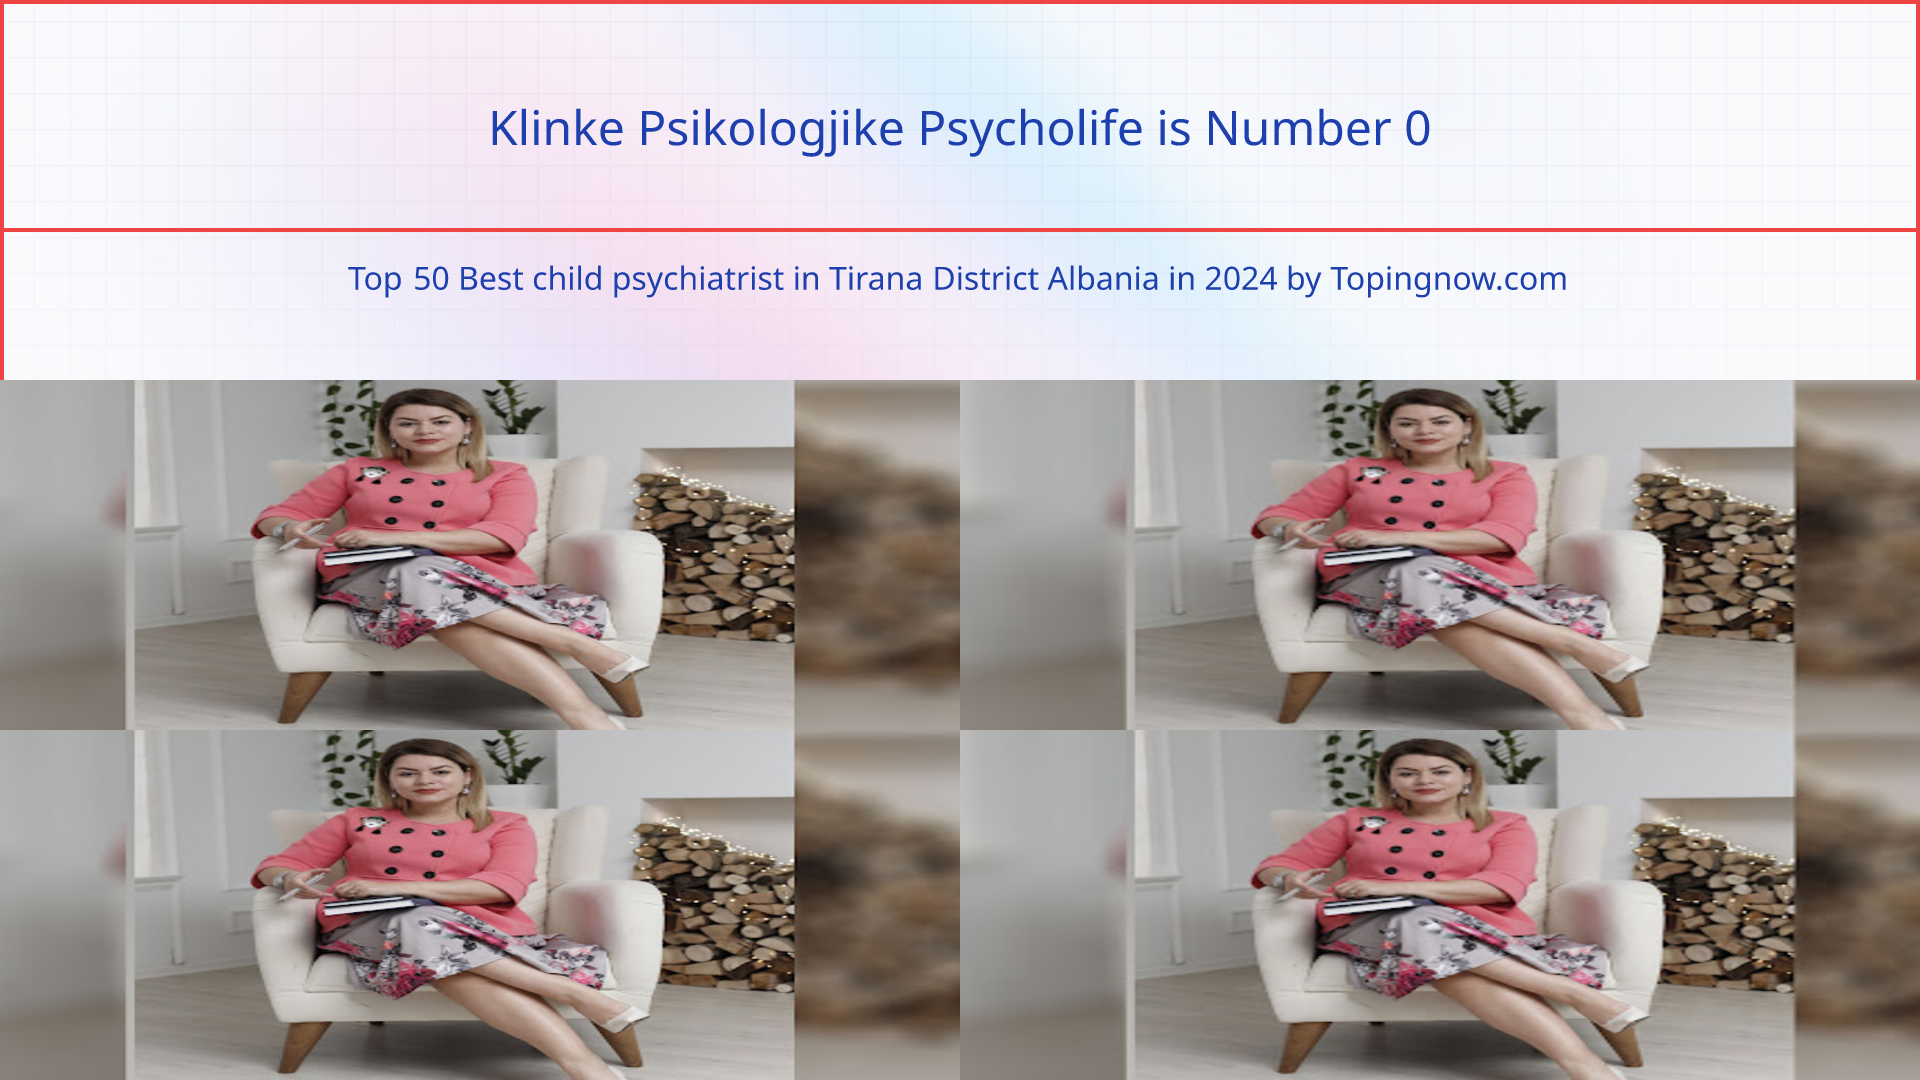 Klinke Psikologjike Psycholife: Top 50 Best child psychiatrist in Tirana District Albania in 2024